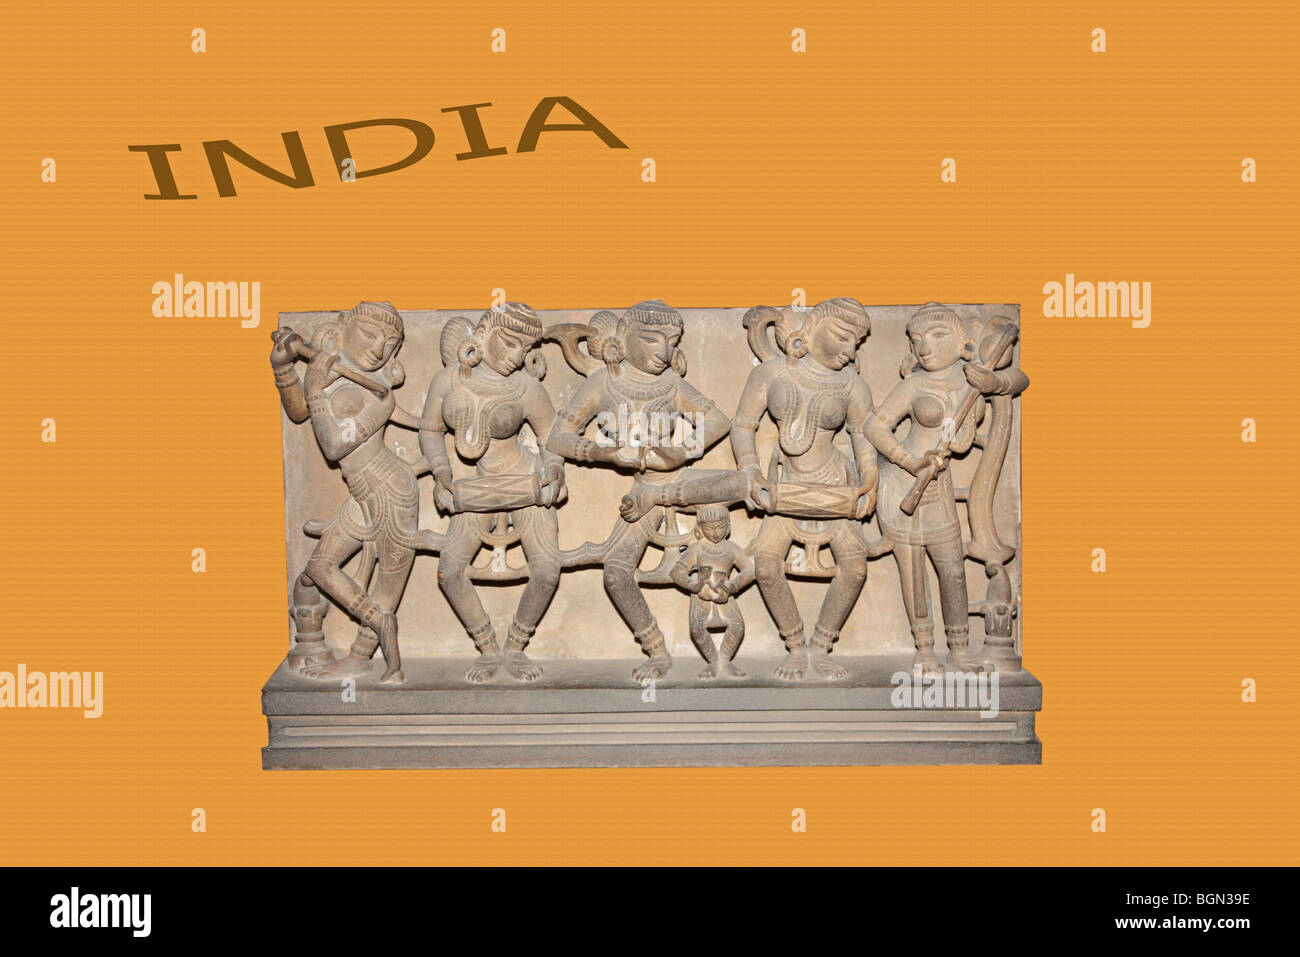 Schneiden Sie für kommerzielle Anzeige Anzeige der indischen Kultur Stockfoto